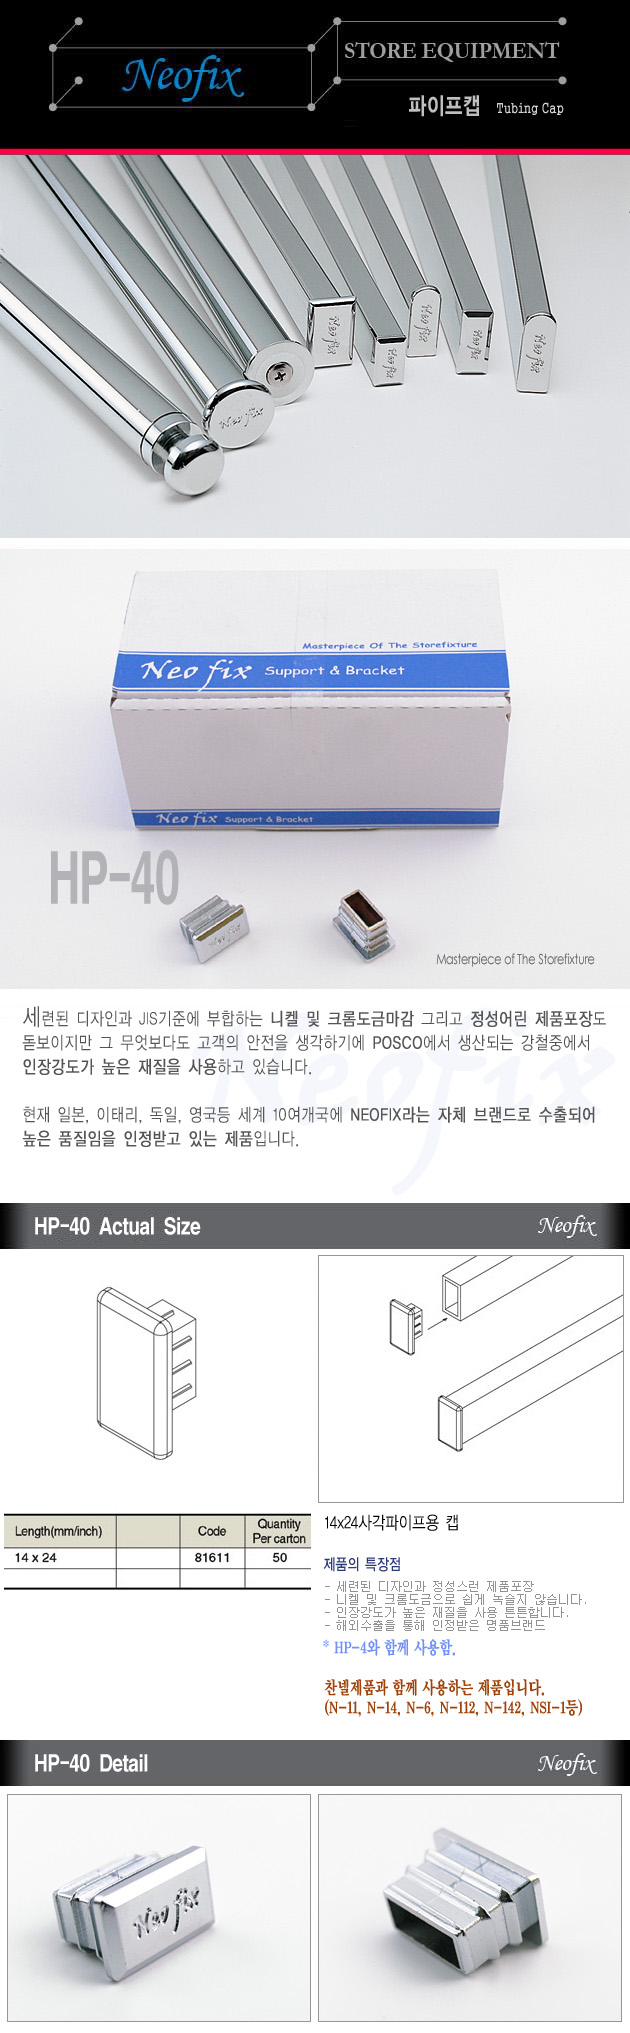 HP-40